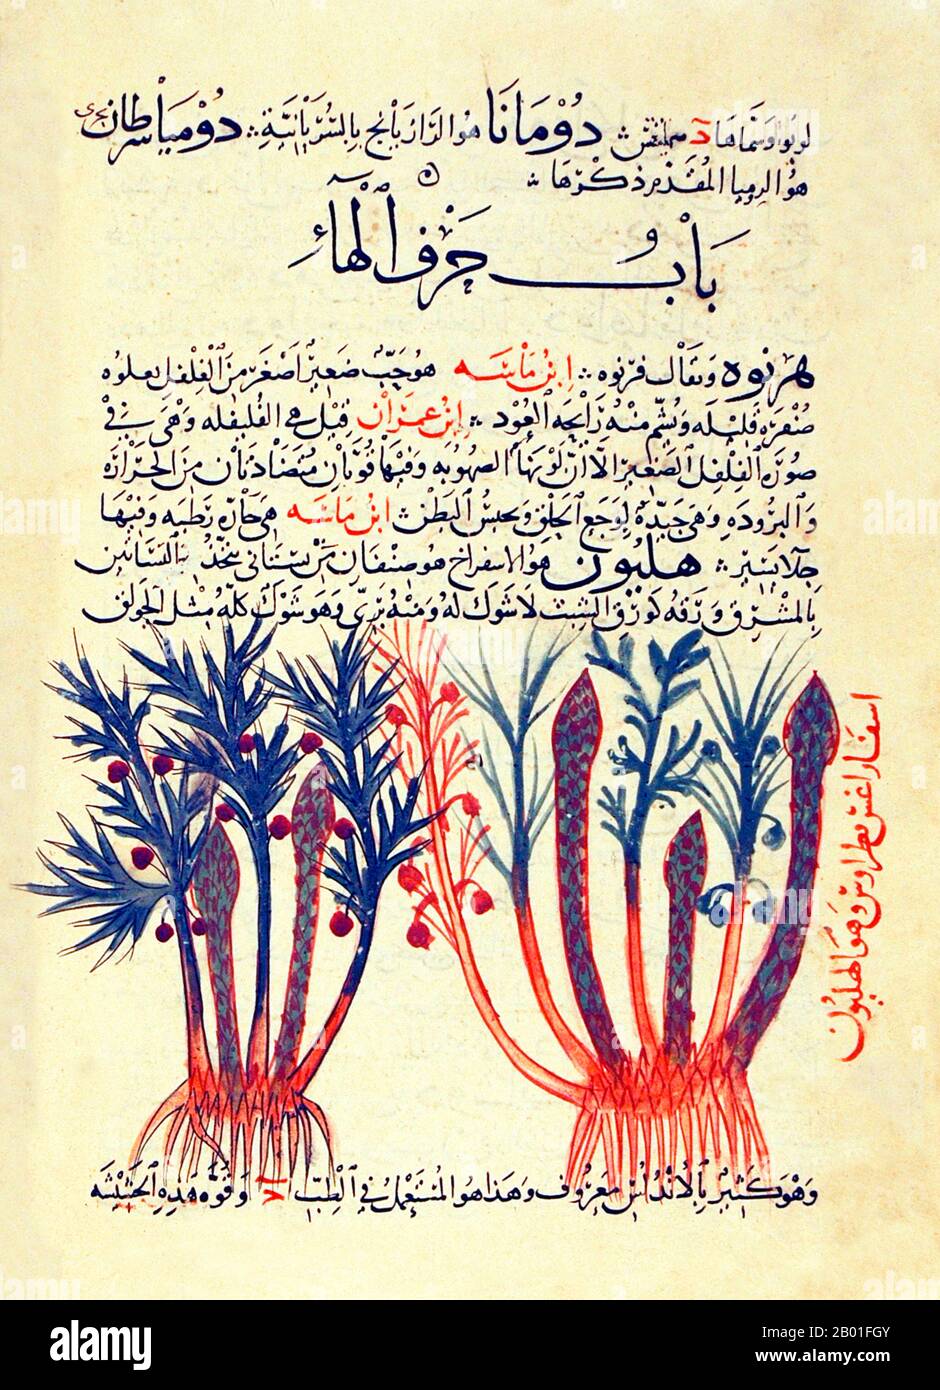 Espagne/Andalousie: Deux types d'asperges. Folio arabe illuminé d'Abu Ja 'Far al-Ghafiqi 'Herbal', vers 12th siècle. Al-Ghafiqi, selon un historien de la médecine arabe du XIIIe siècle, était le plus grand savant des plantes médicinales, de leurs noms et de leurs propriétés, et son travail n'avait pas d'égal dans ce domaine. Ce point de vue a été confirmé plus tard par Max Meyerhof (d. 1945), l'éminent historien de la médecine islamique, qui a déclaré qu'al-Ghafiqi était sans aucun doute le plus grand botaniste et pharmacologue de la période islamique. Il est originaire de Ghafiq, près de Cordoue, sur la péninsule ibérique du sud. Banque D'Images